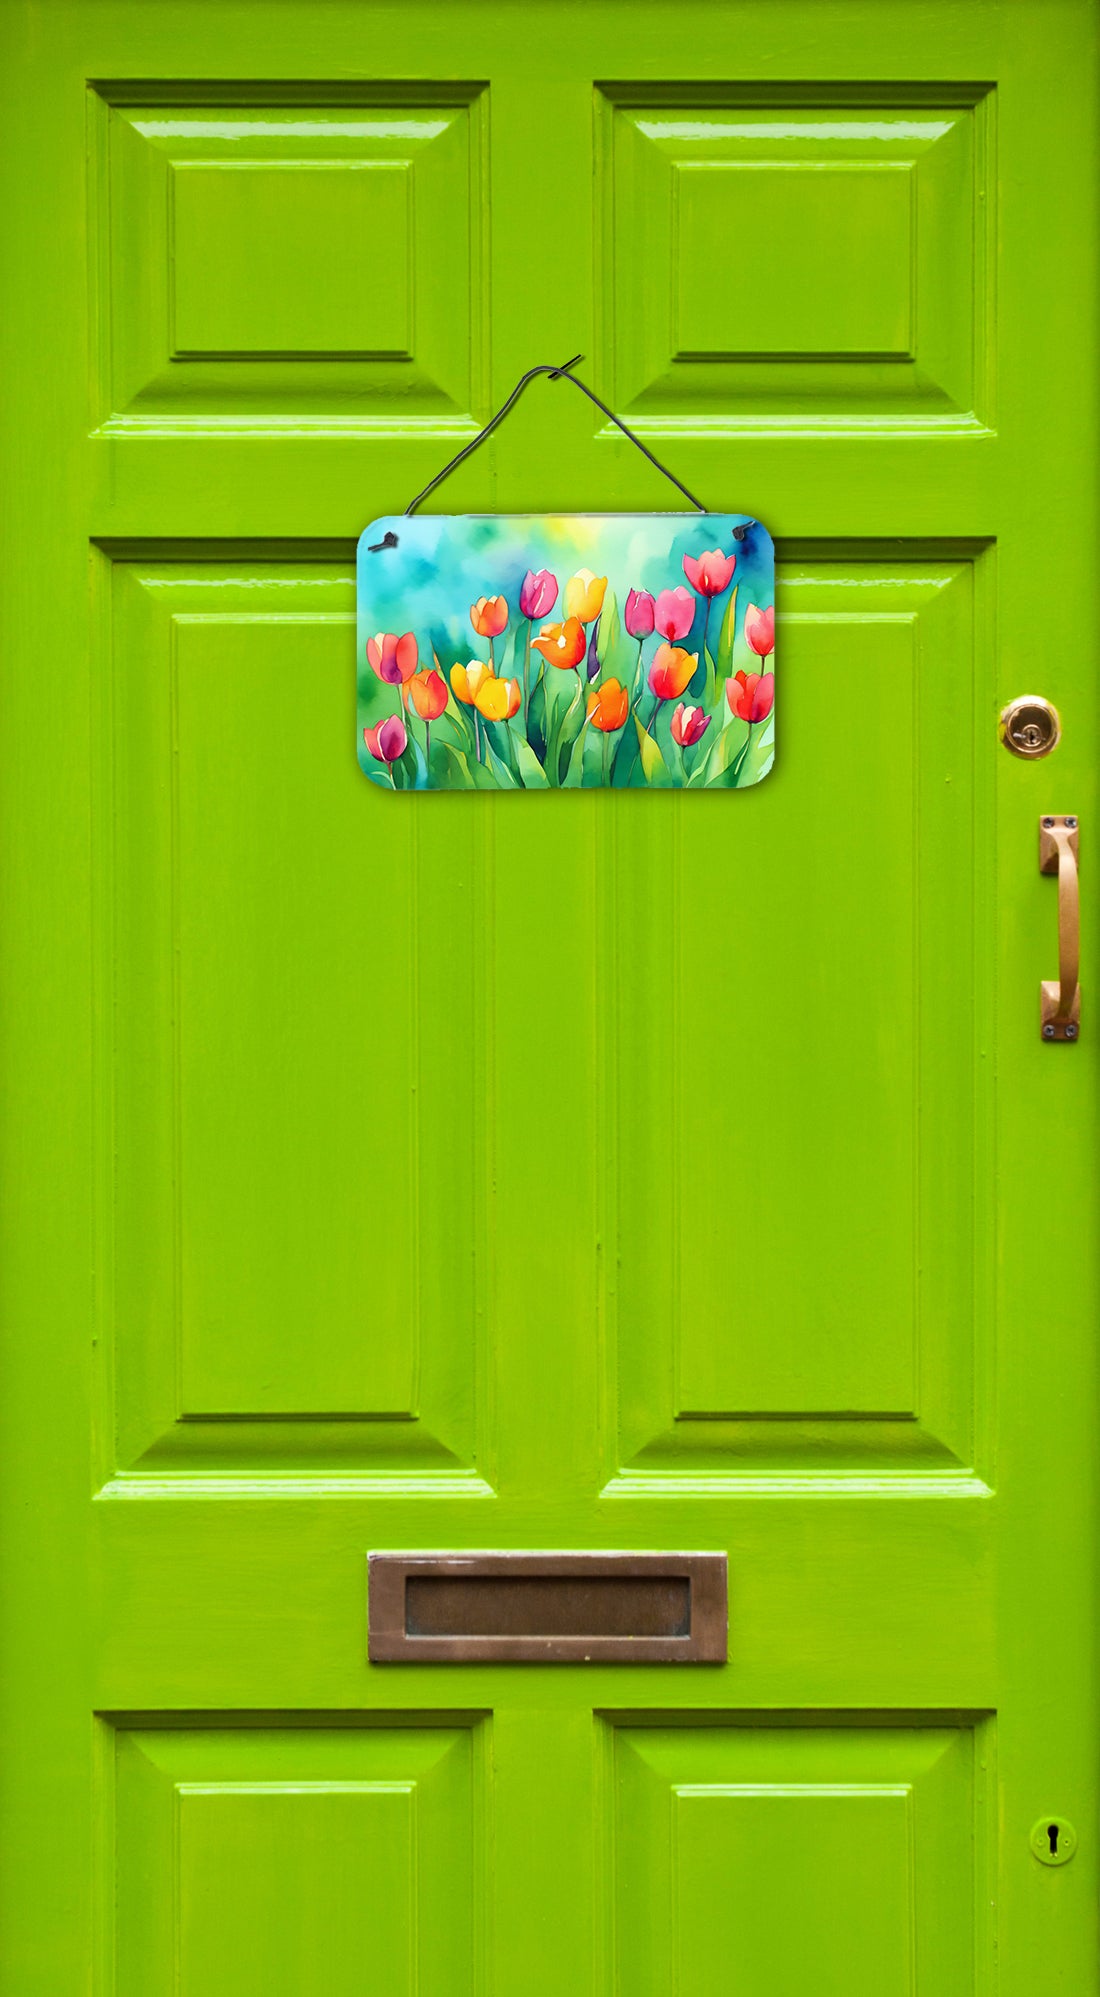 Buy this Tulips in Watercolor Wall or Door Hanging Prints